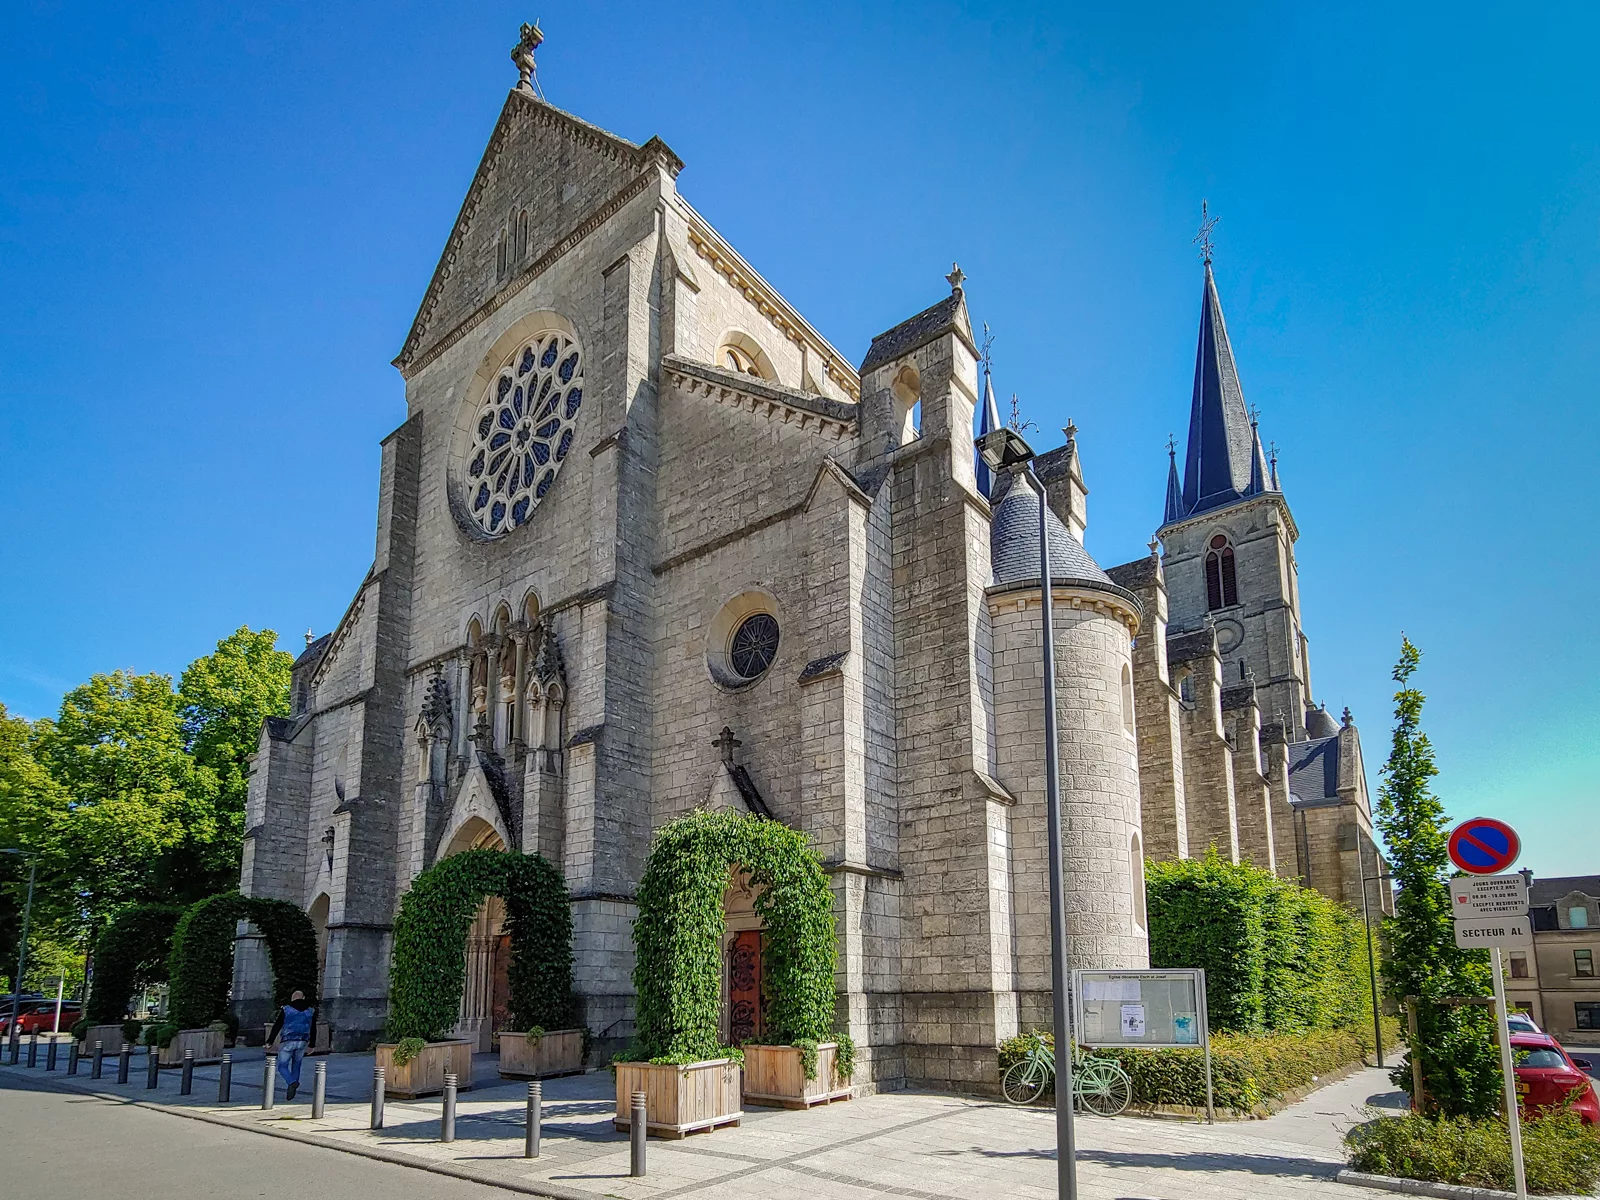 Eglisée Esch-Sur Alzette, Luxembourg